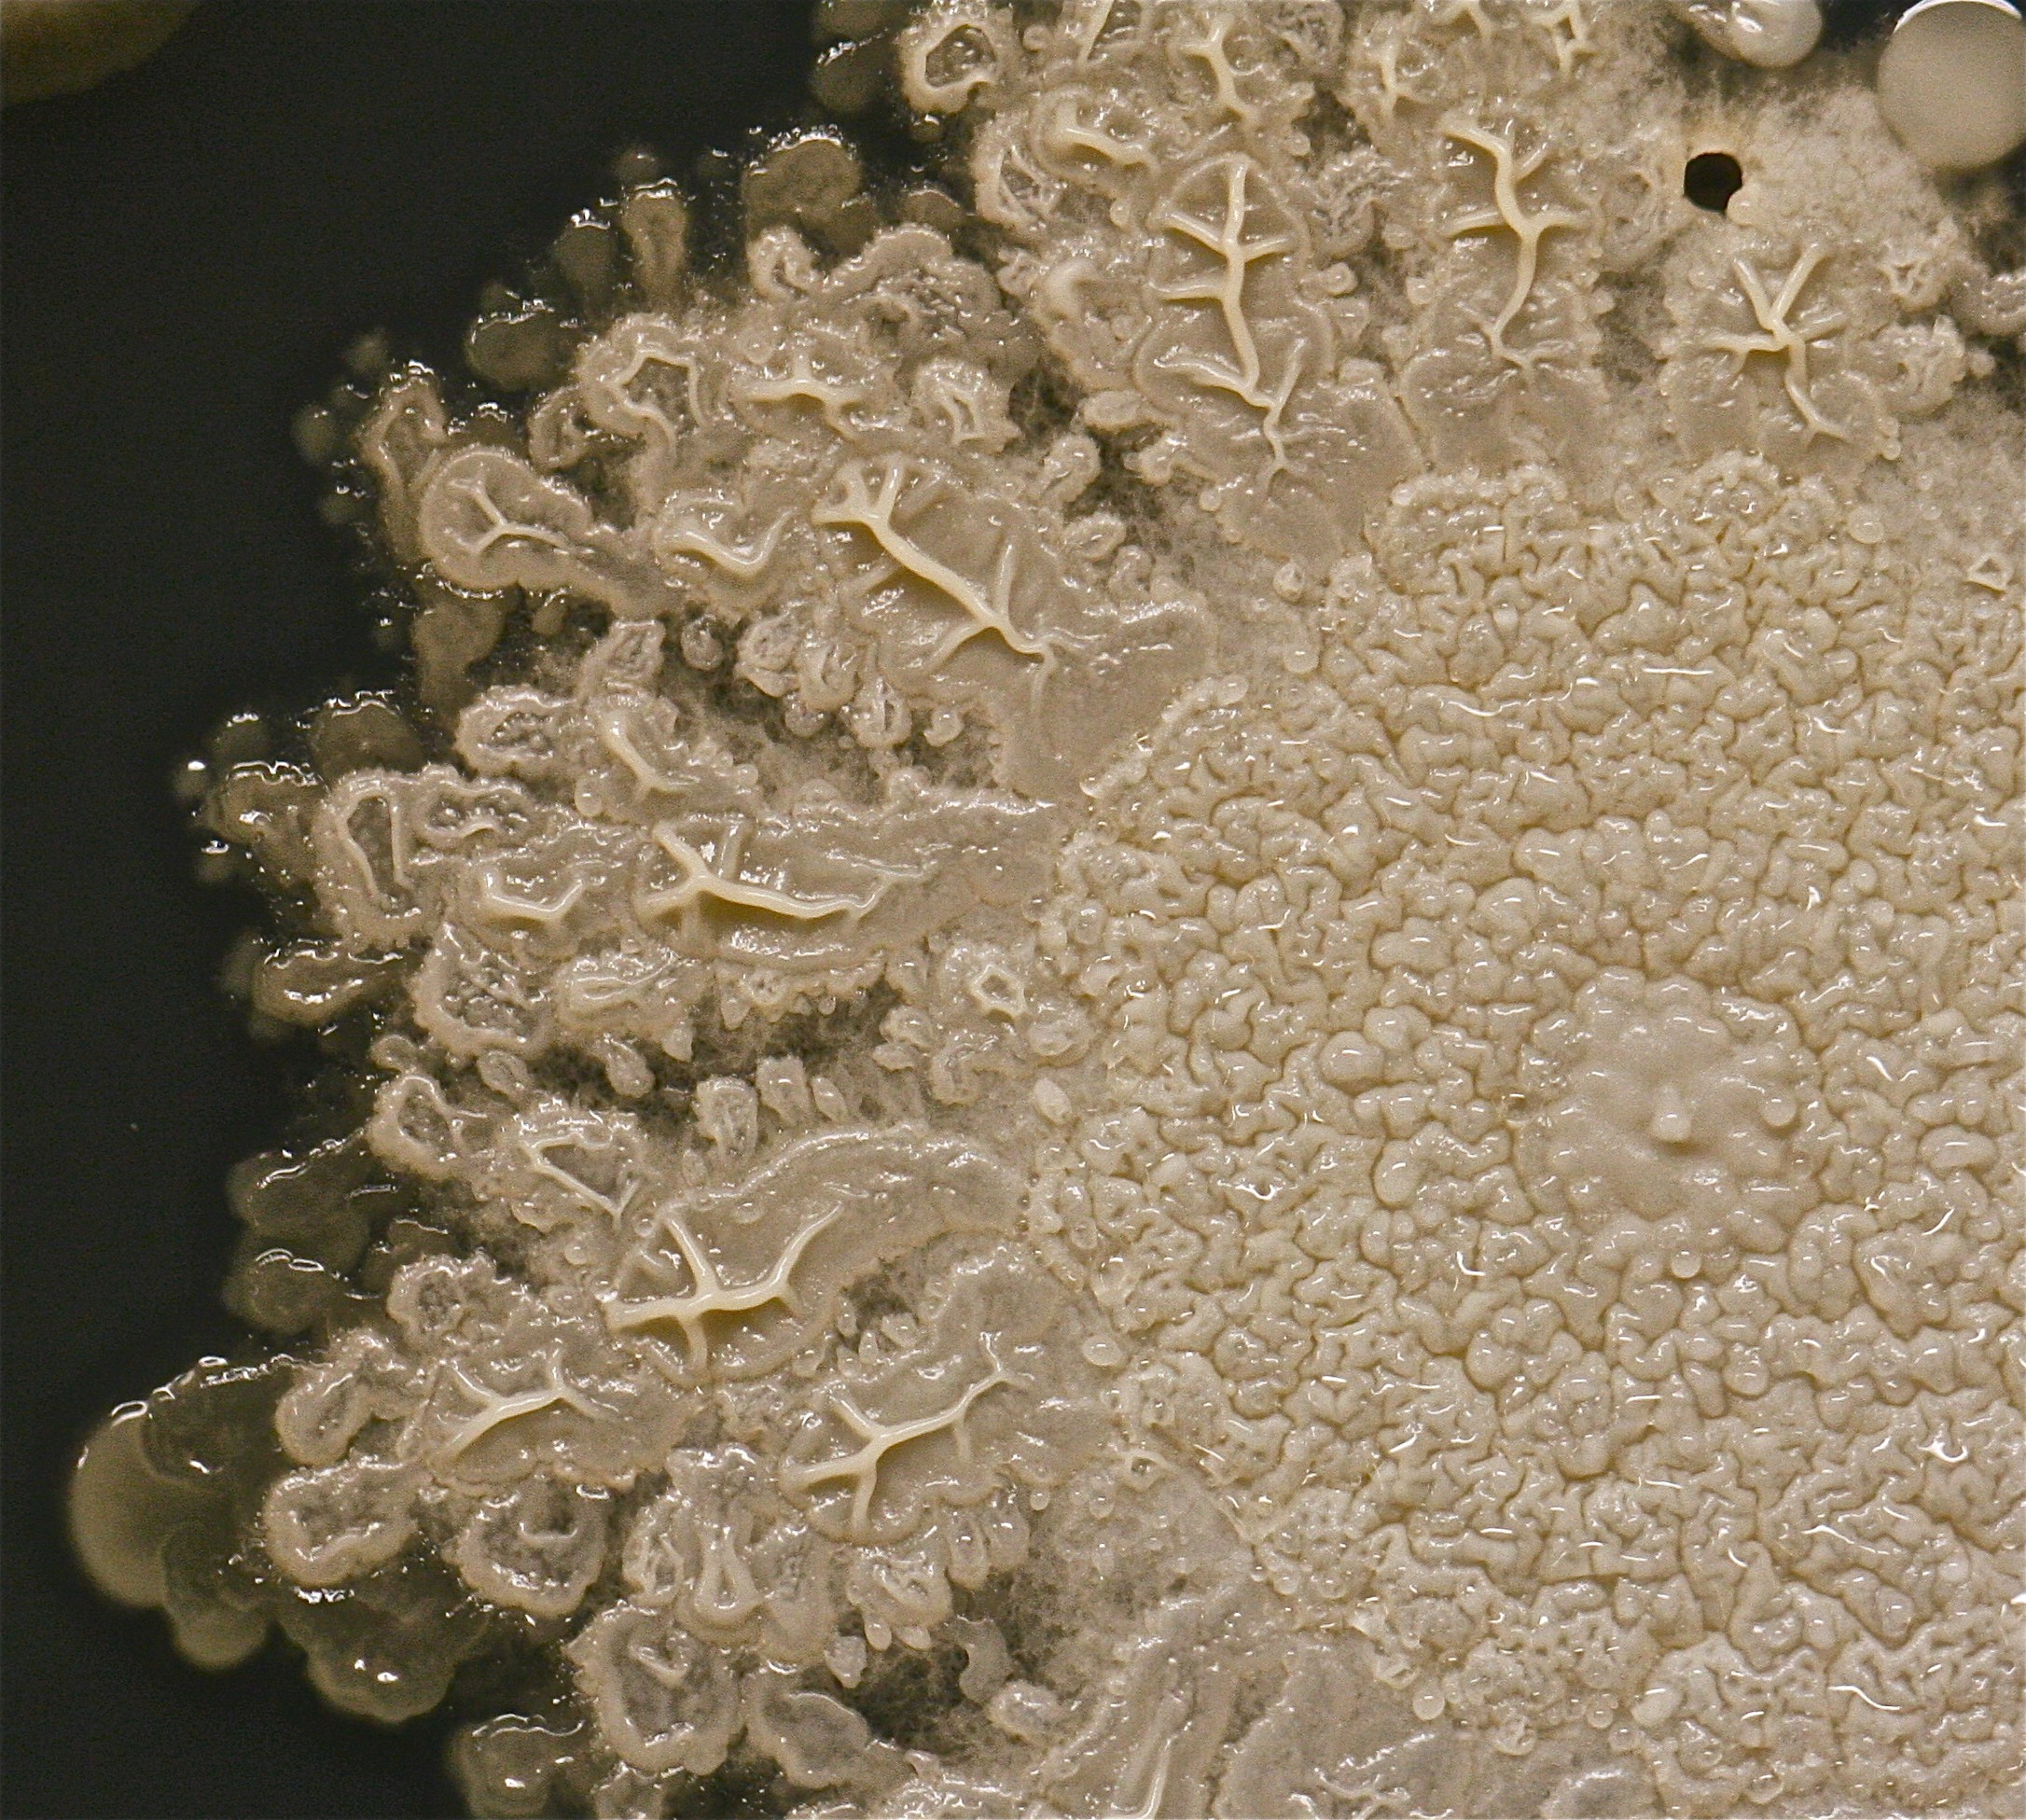 Una de las colonias más grandes en la placa, probablemente un tipo de bacilo. 